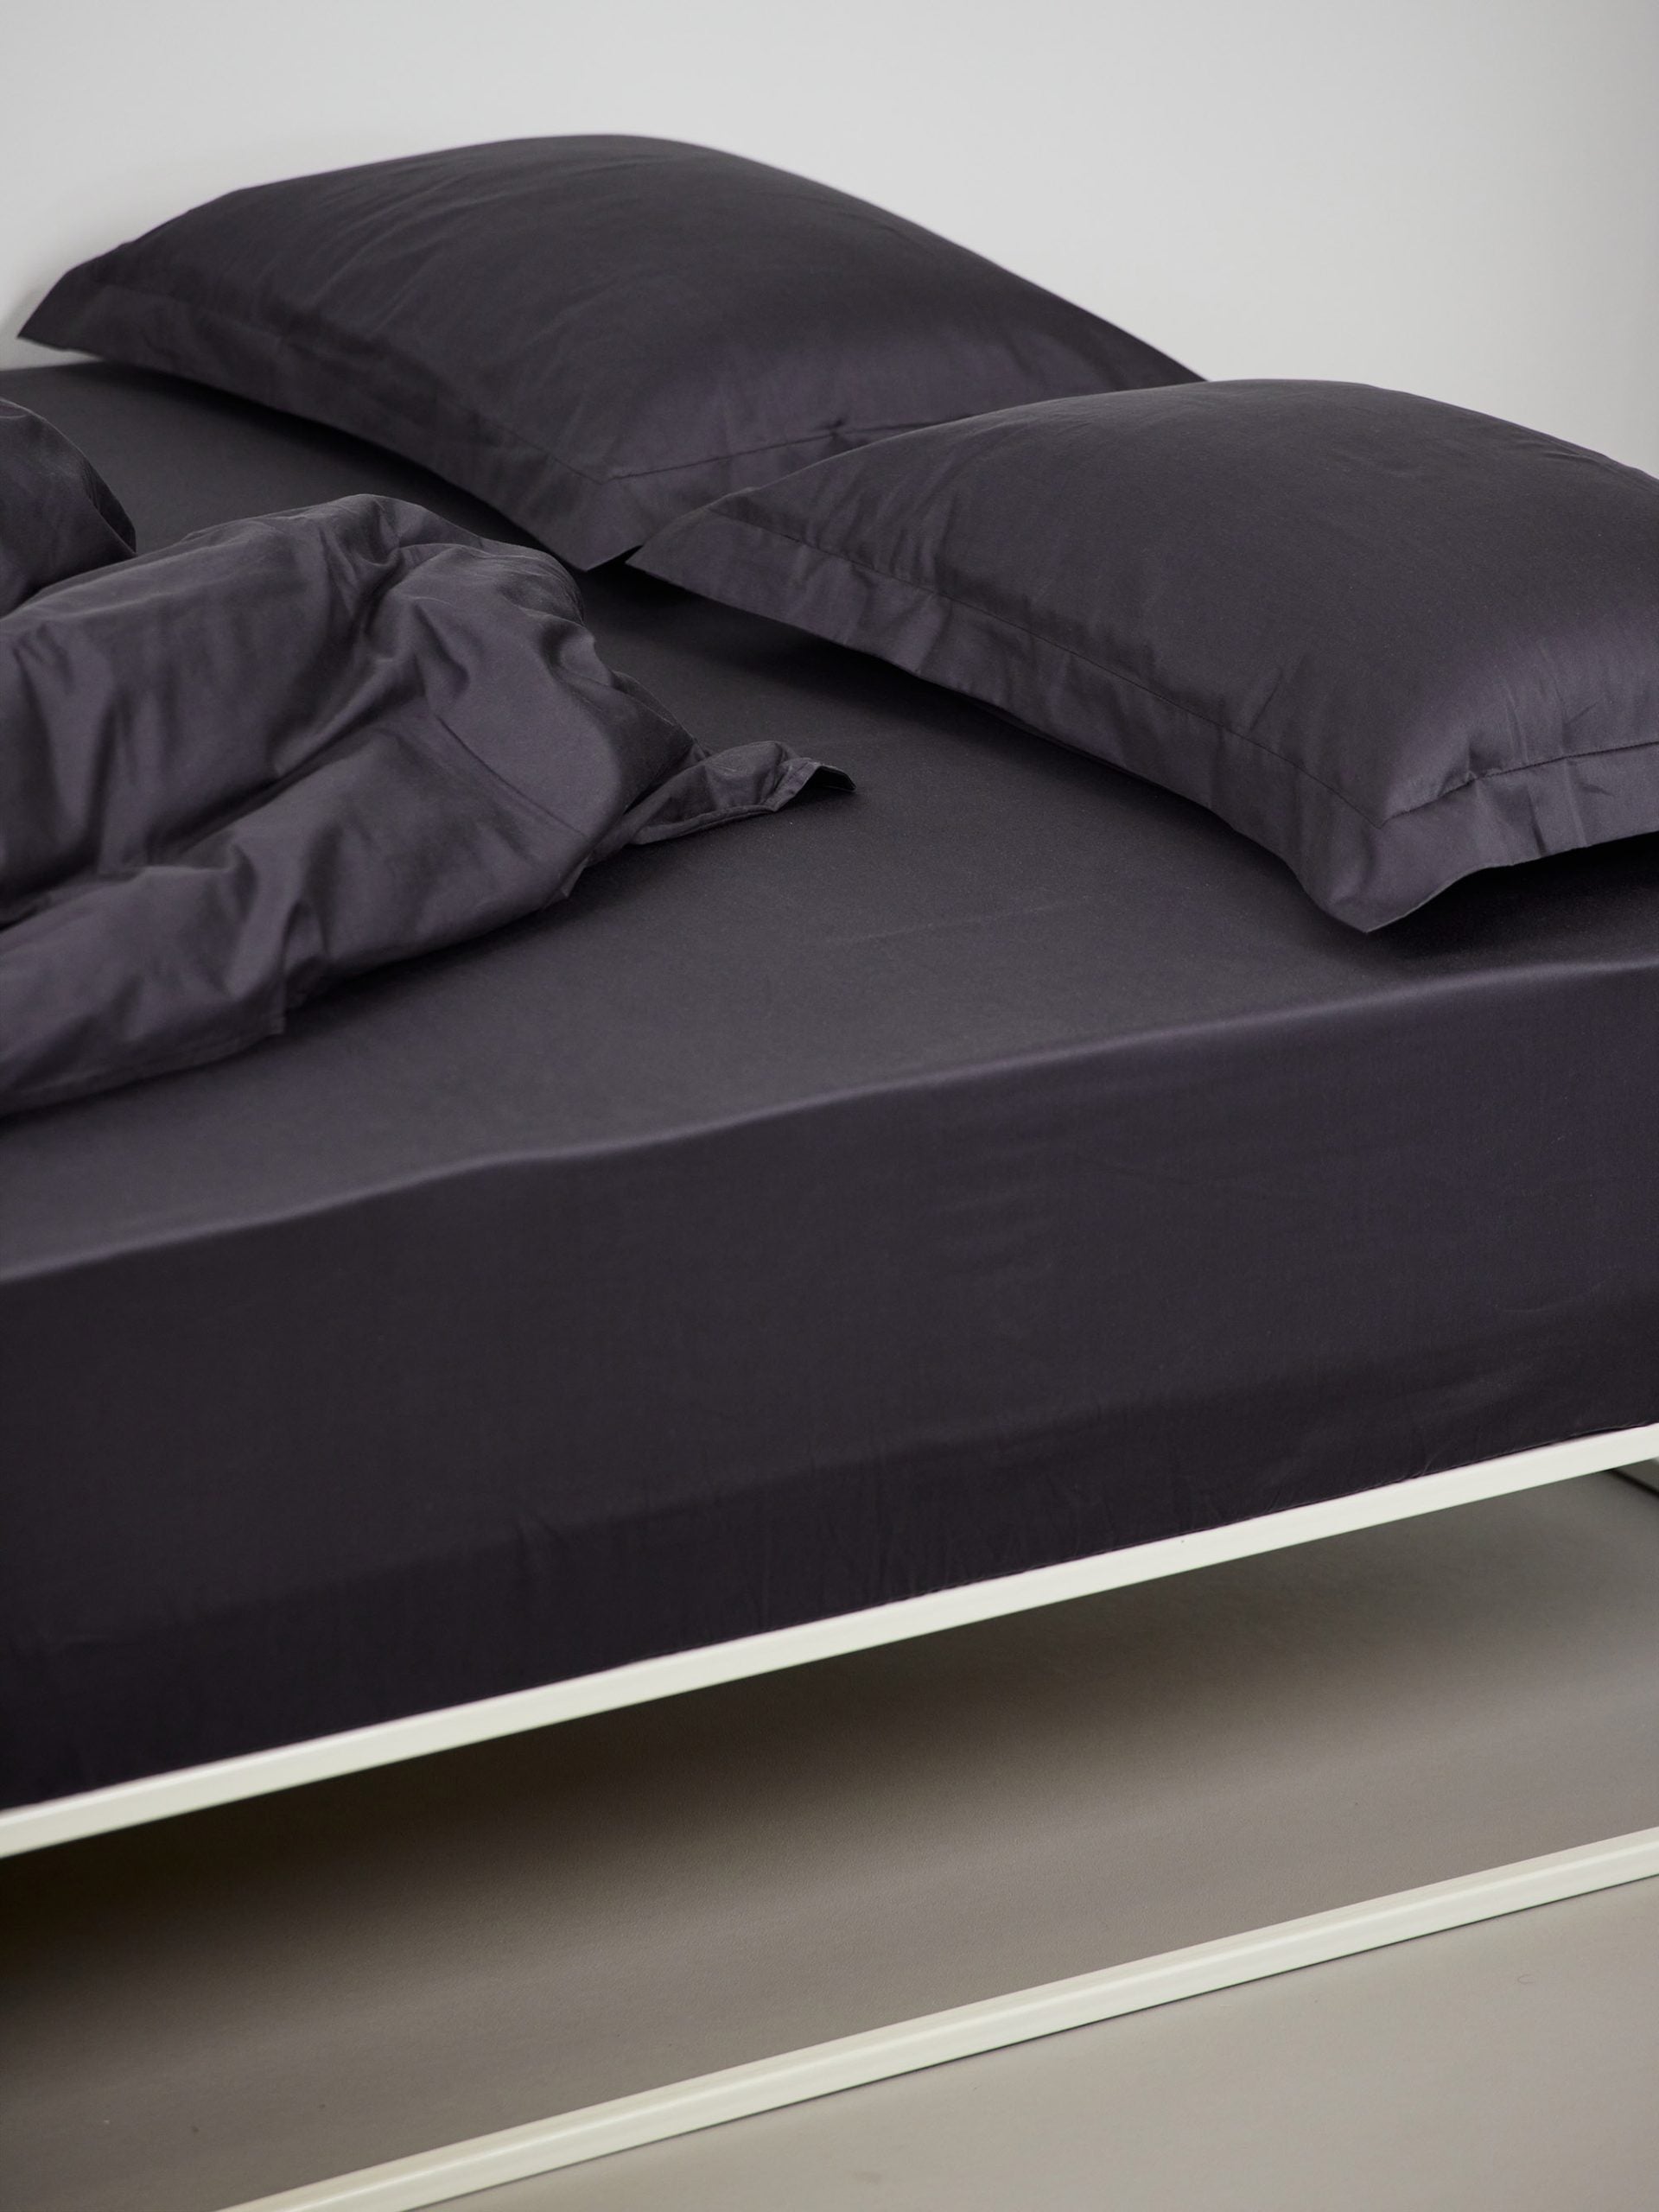 מיטת ברזל לבנה עם סדין, שמיכת פוך, כריות וציפיות לכריות בצבע פחם